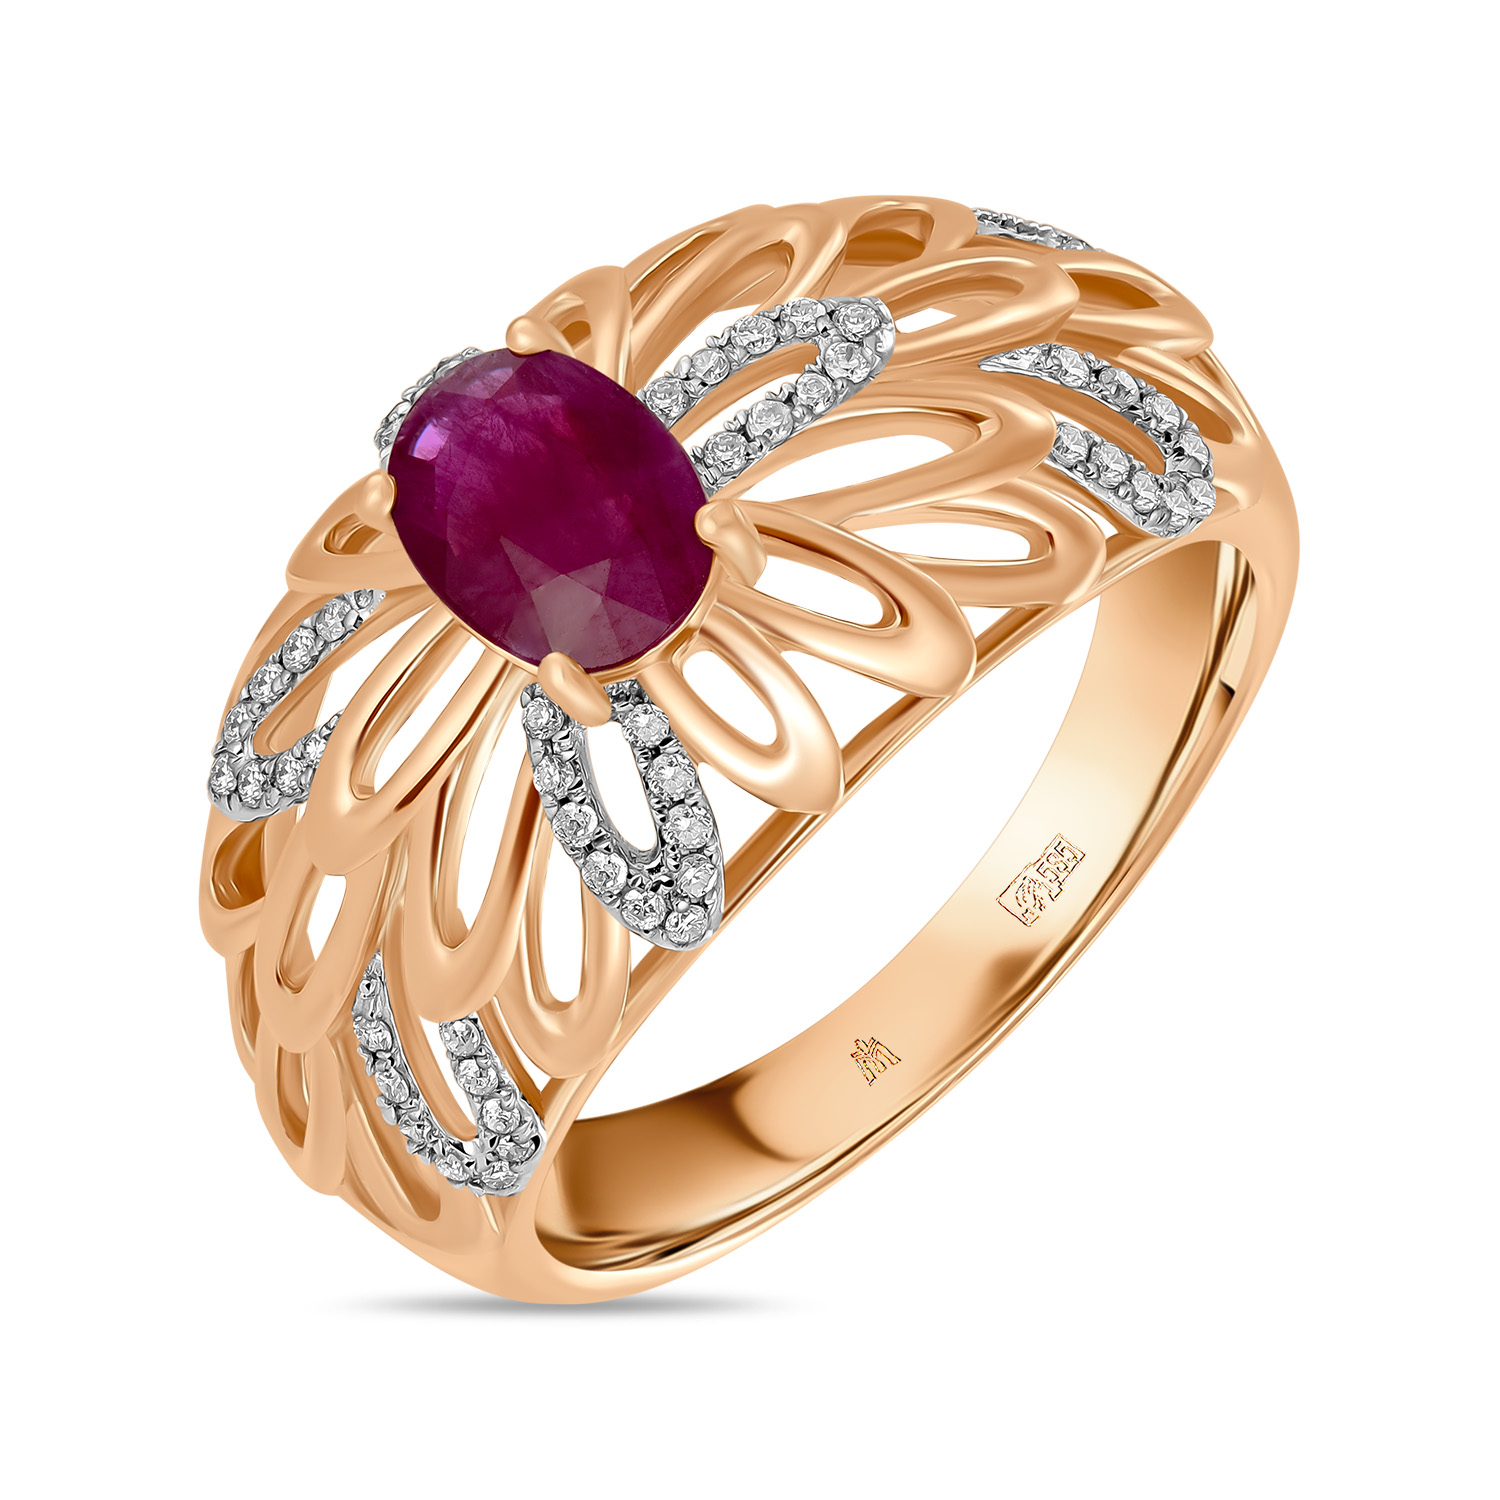 Кольца МЮЗ Золотое кольцо с бриллиантами и рубином кольца мюз золотое кольцо с бриллиантами рубином и сапфирами